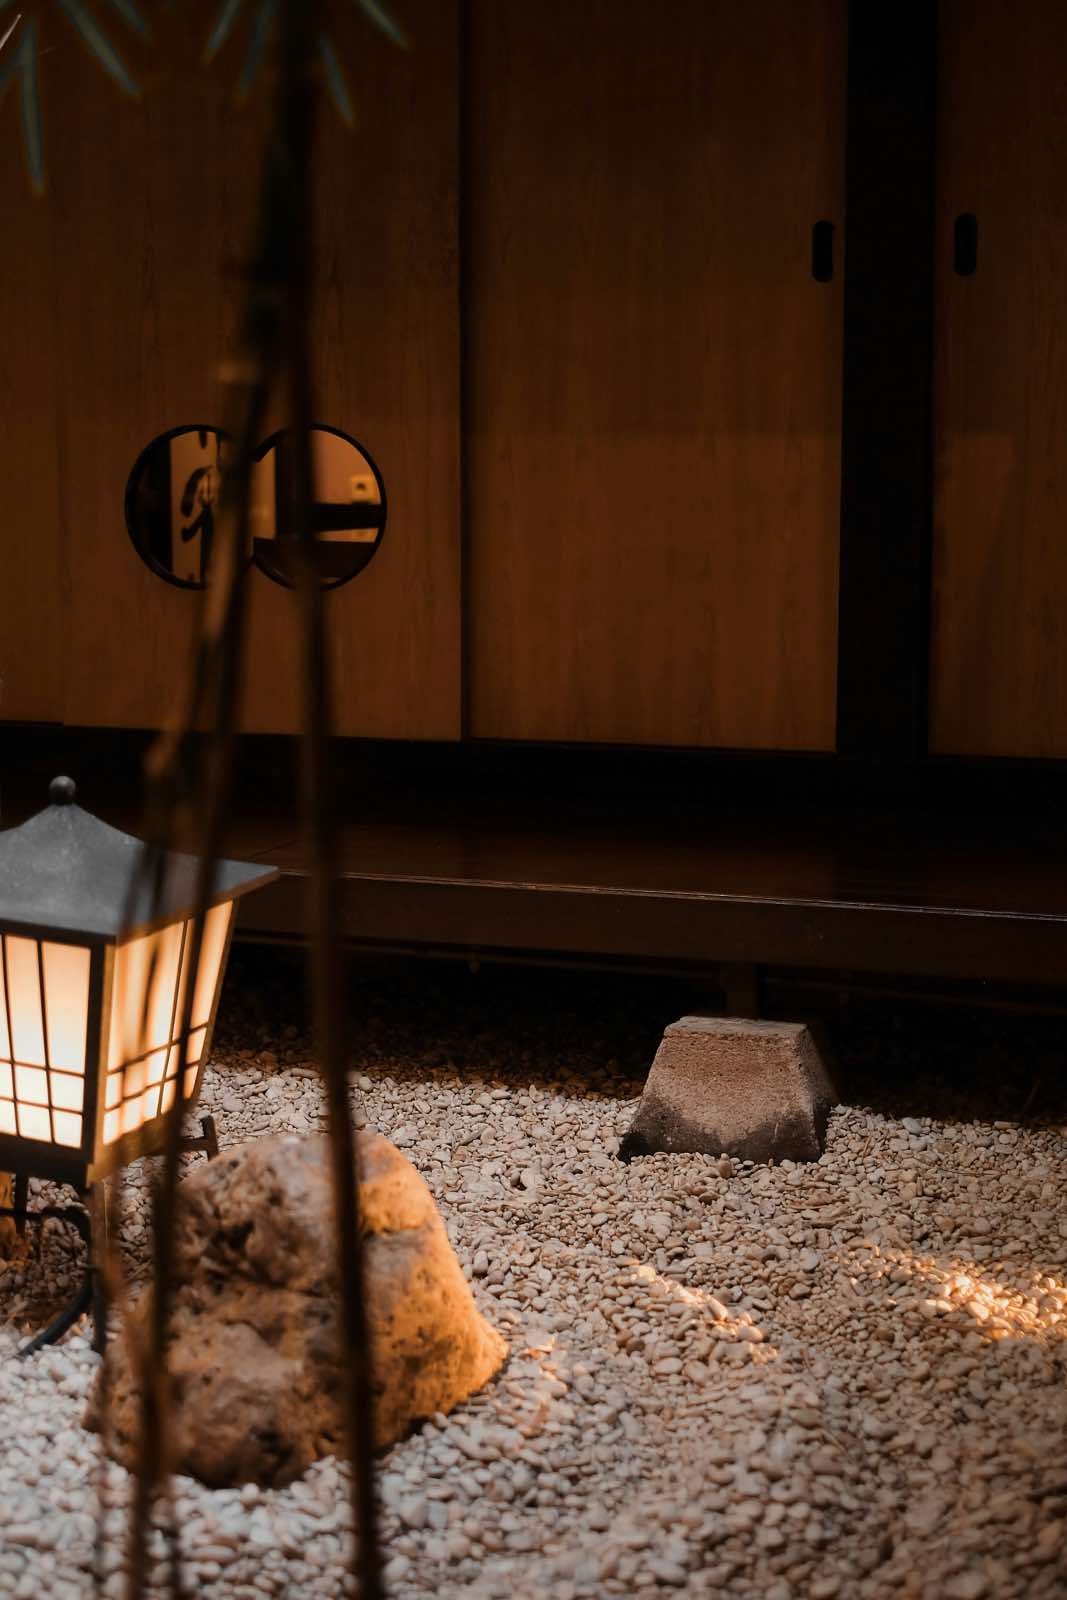 patio-jardín zen japonés con piedras, grava y linternas de exterior